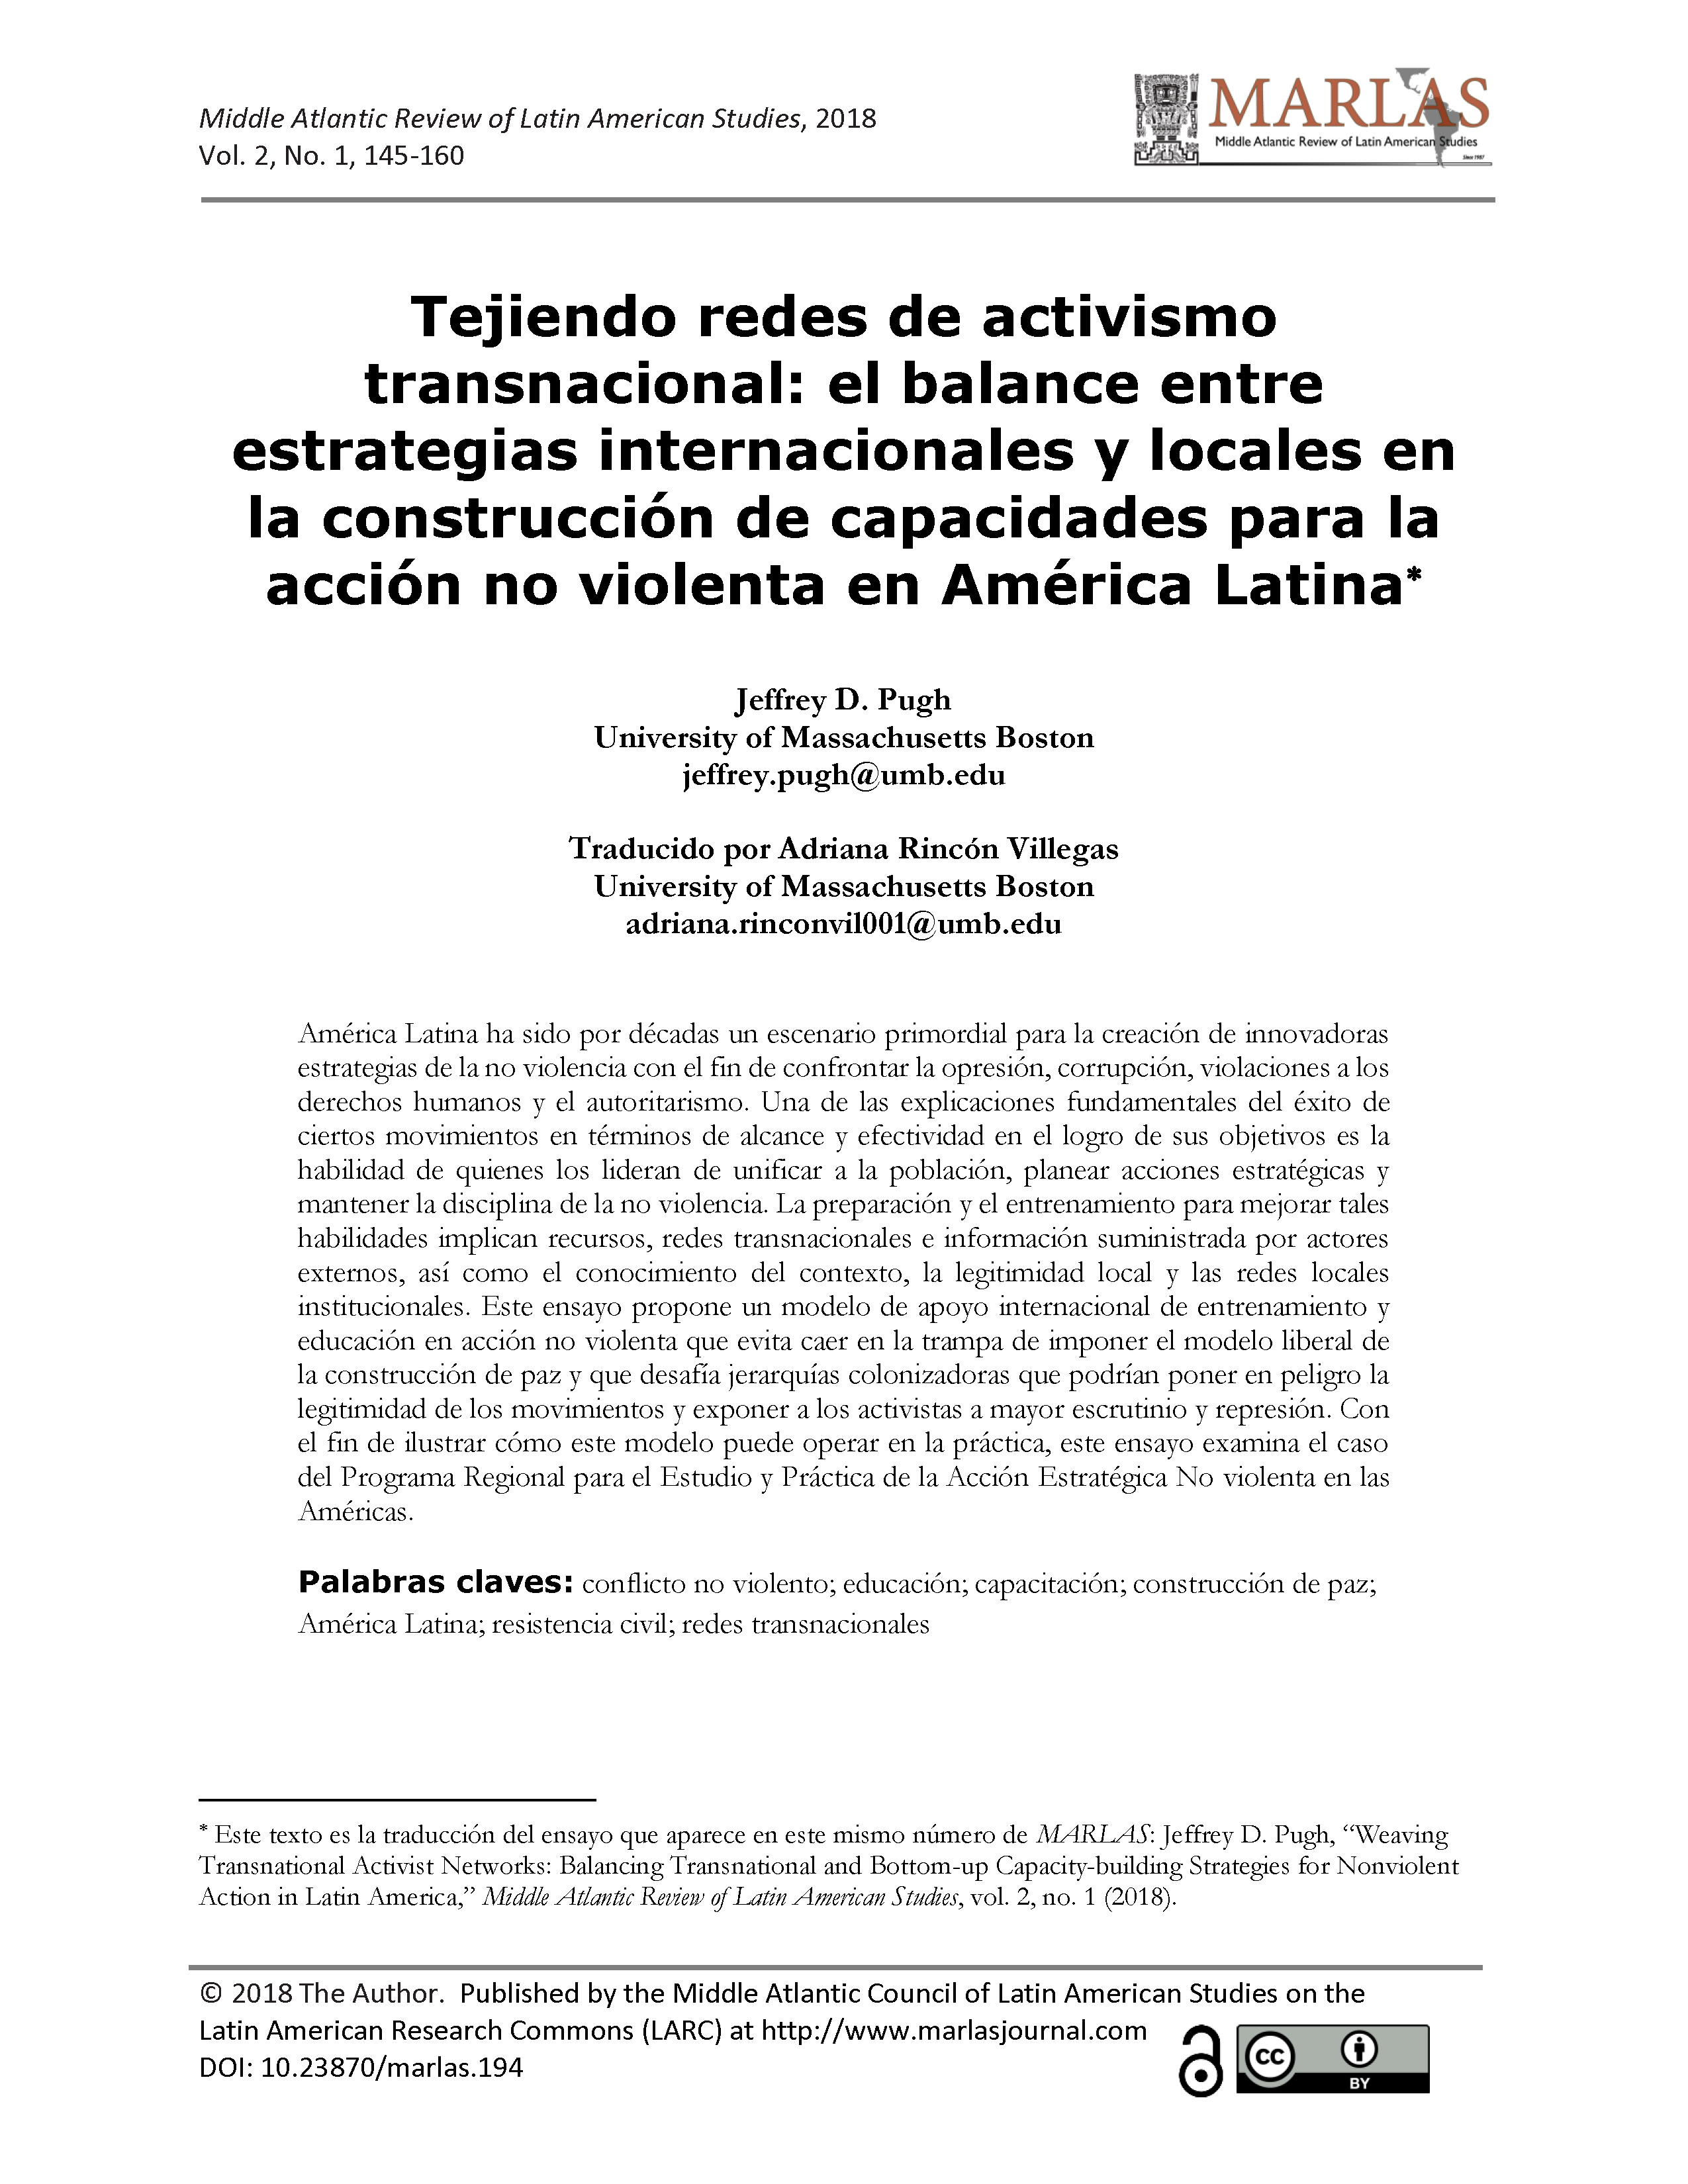 Tejiendo redes de activismo transnacional: el balance entre estrategias internacionales y locales en la construcción de capacidades para la acción no violenta en América Latina